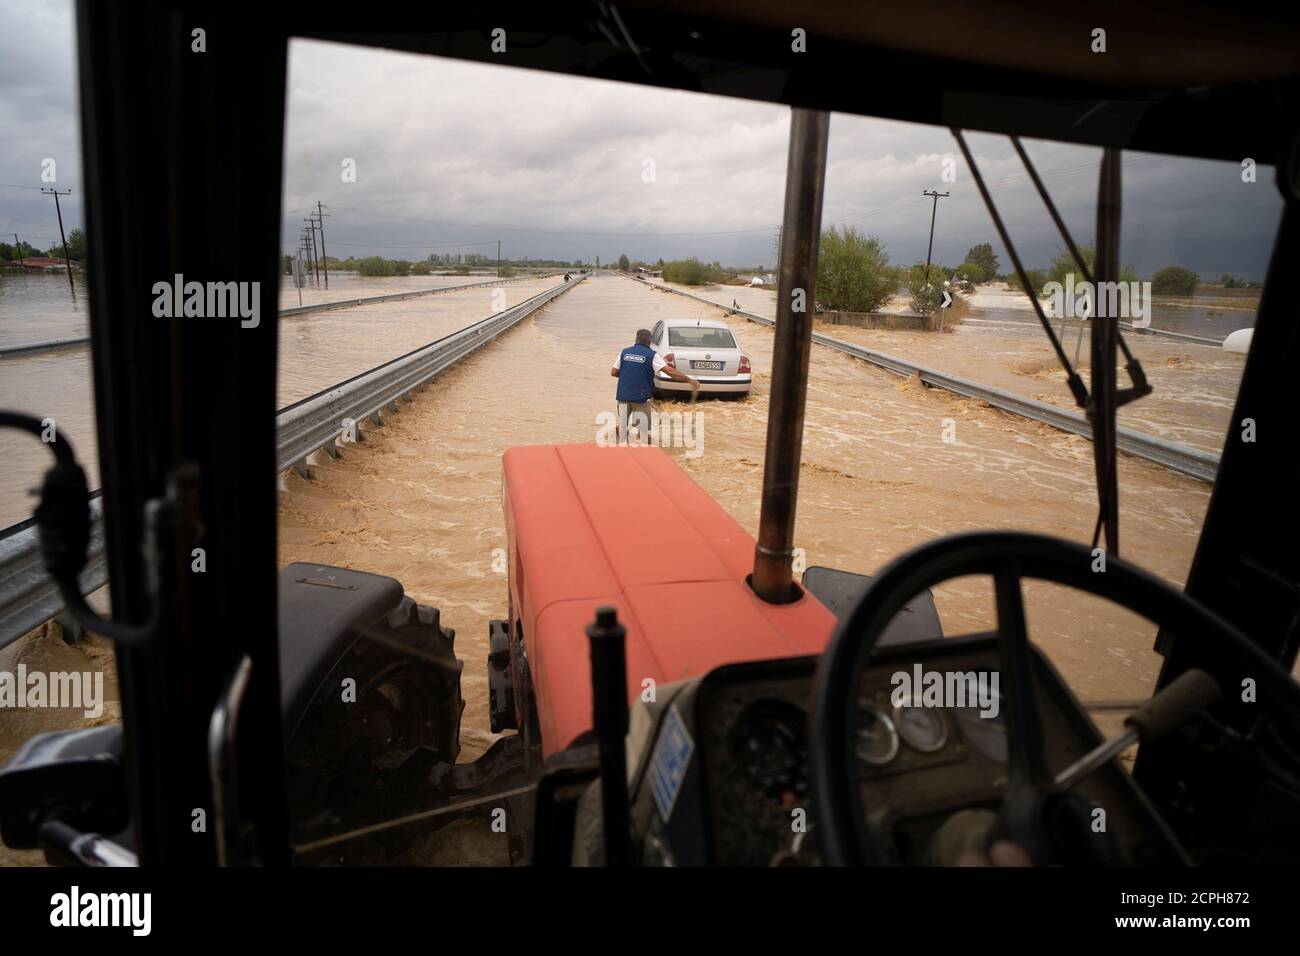 Un local se prepara para remolcar su coche en una carretera inundada después de una tormenta cerca de la aldea de Artesiano, en el centro de Grecia, el 19 de septiembre de 2020. REUTERS/Giannis Floulis Foto de stock